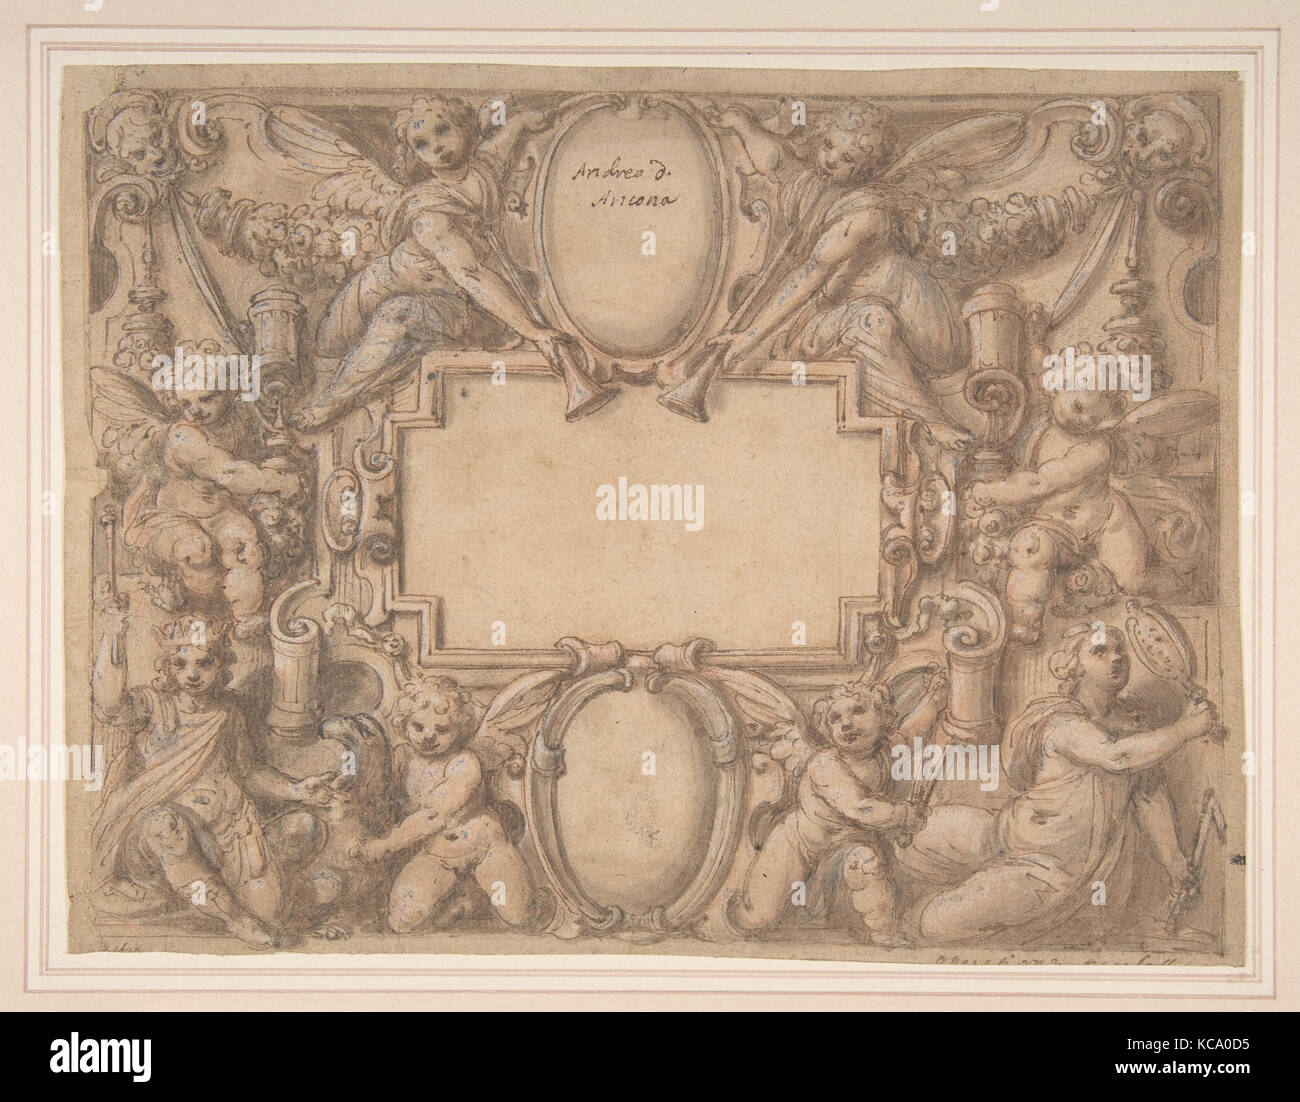 Un cartiglio e due schermi circondato da figure allegoriche., attribuito ad Andrea Lilli, 1570-1631 Foto Stock